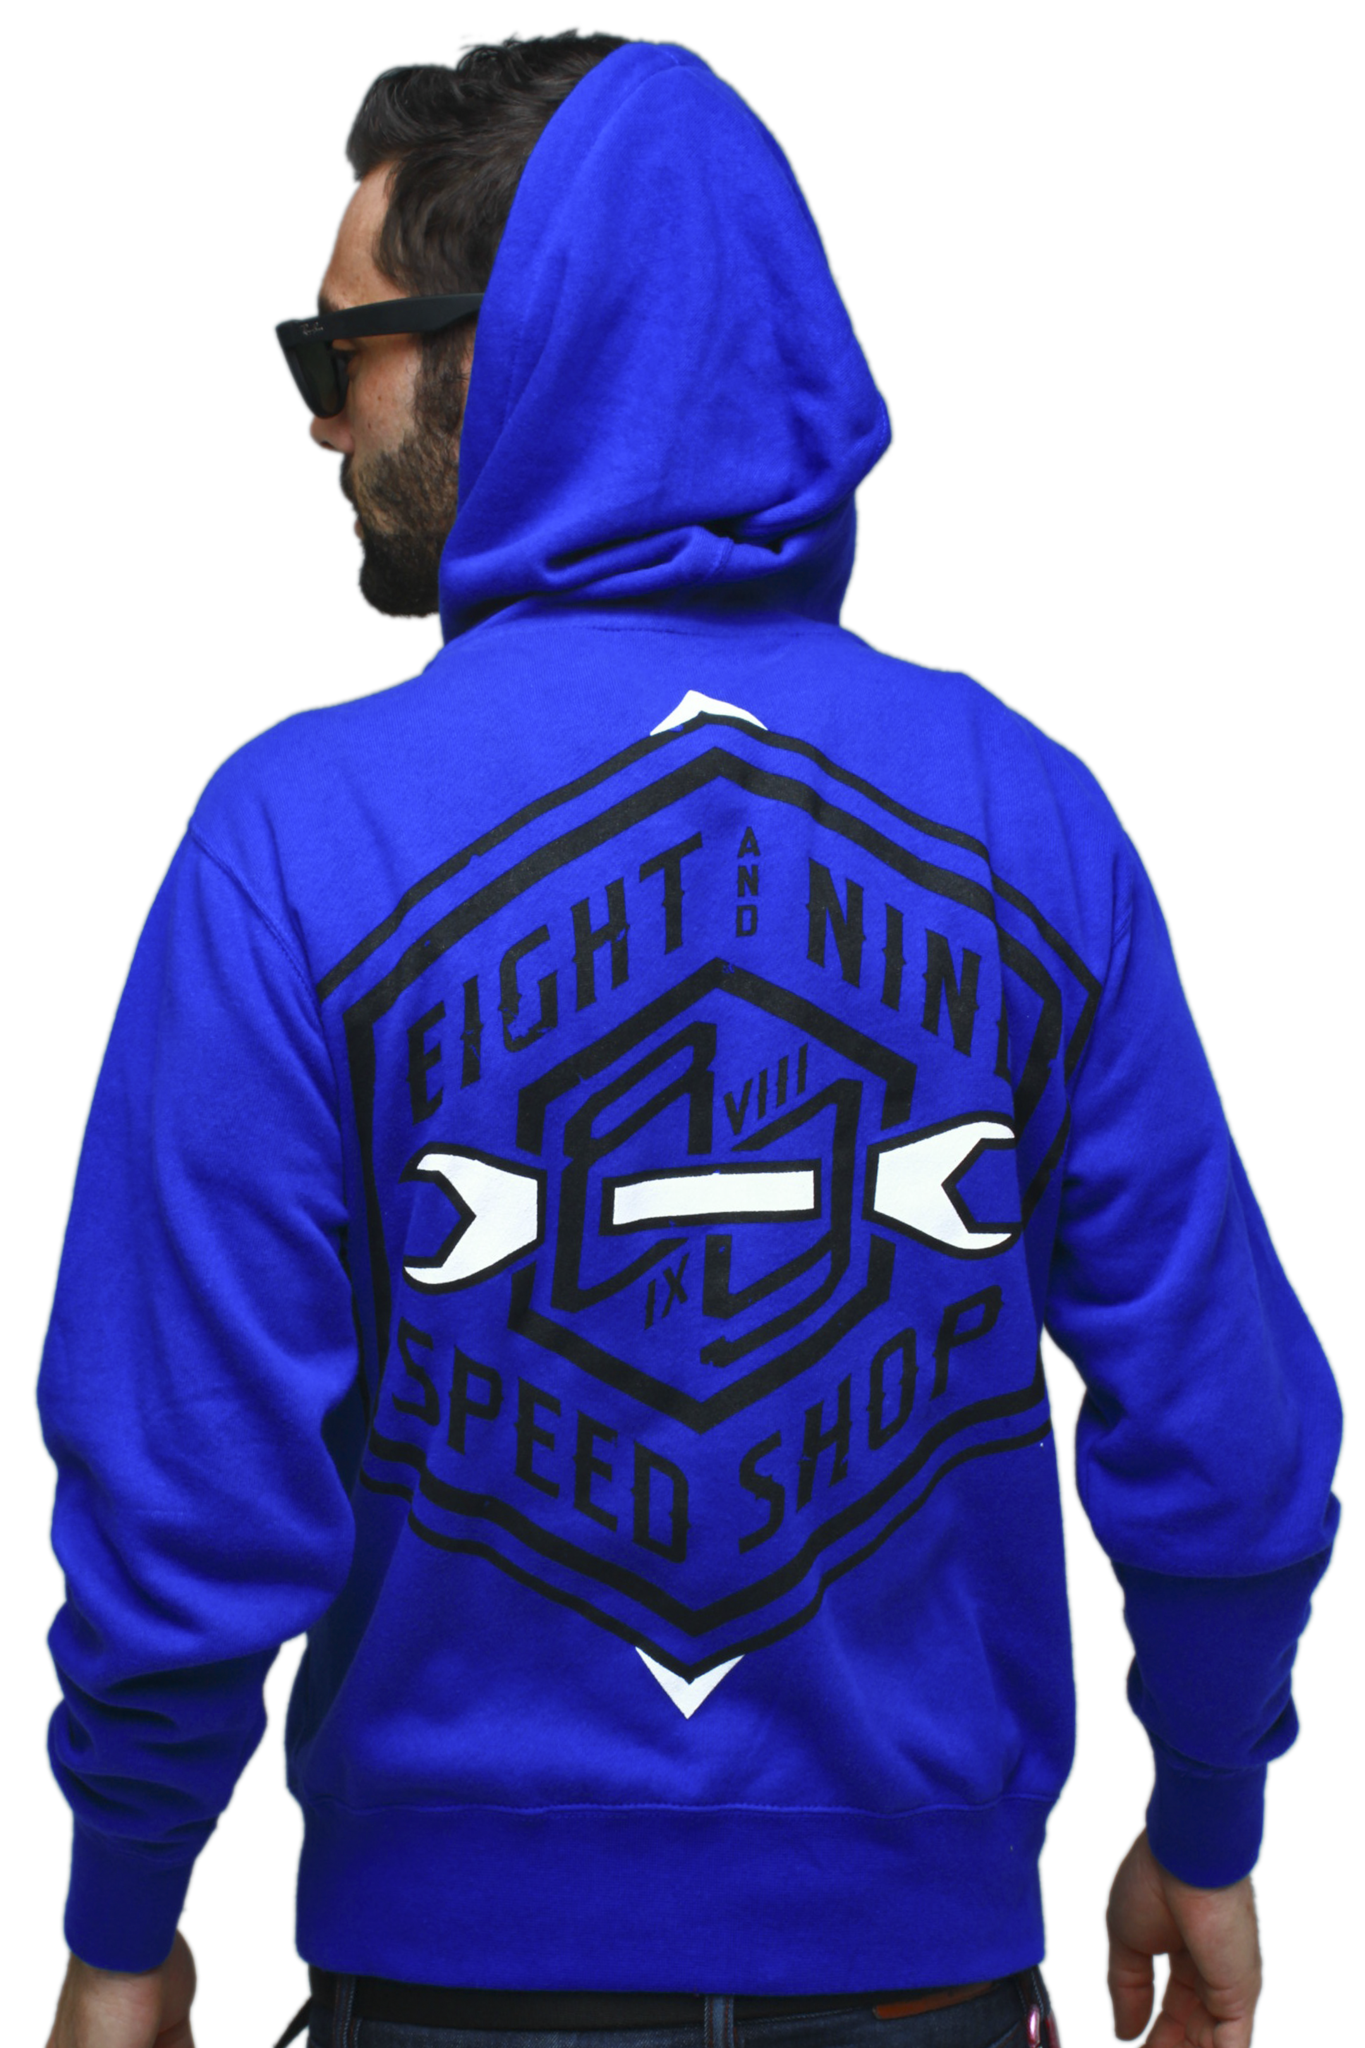 Speed Shop Royal Zip Up Sweatshirt - 1